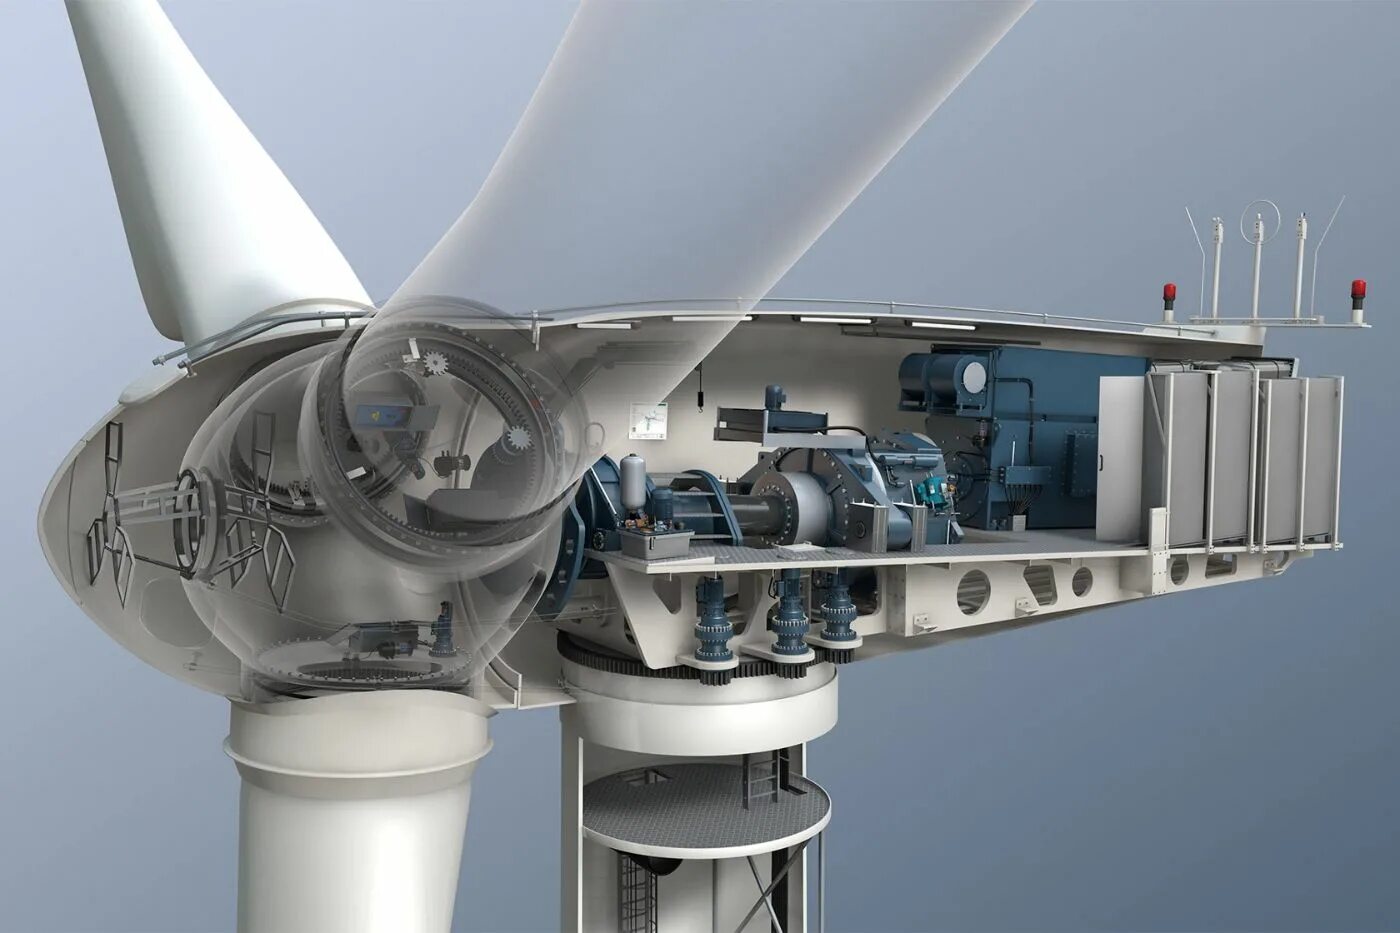 Main winds. Wind Turbine gearbox. Карусельные (роторные) ВЭС. Ветрогенератор. Турбинные ветрогенераторы.